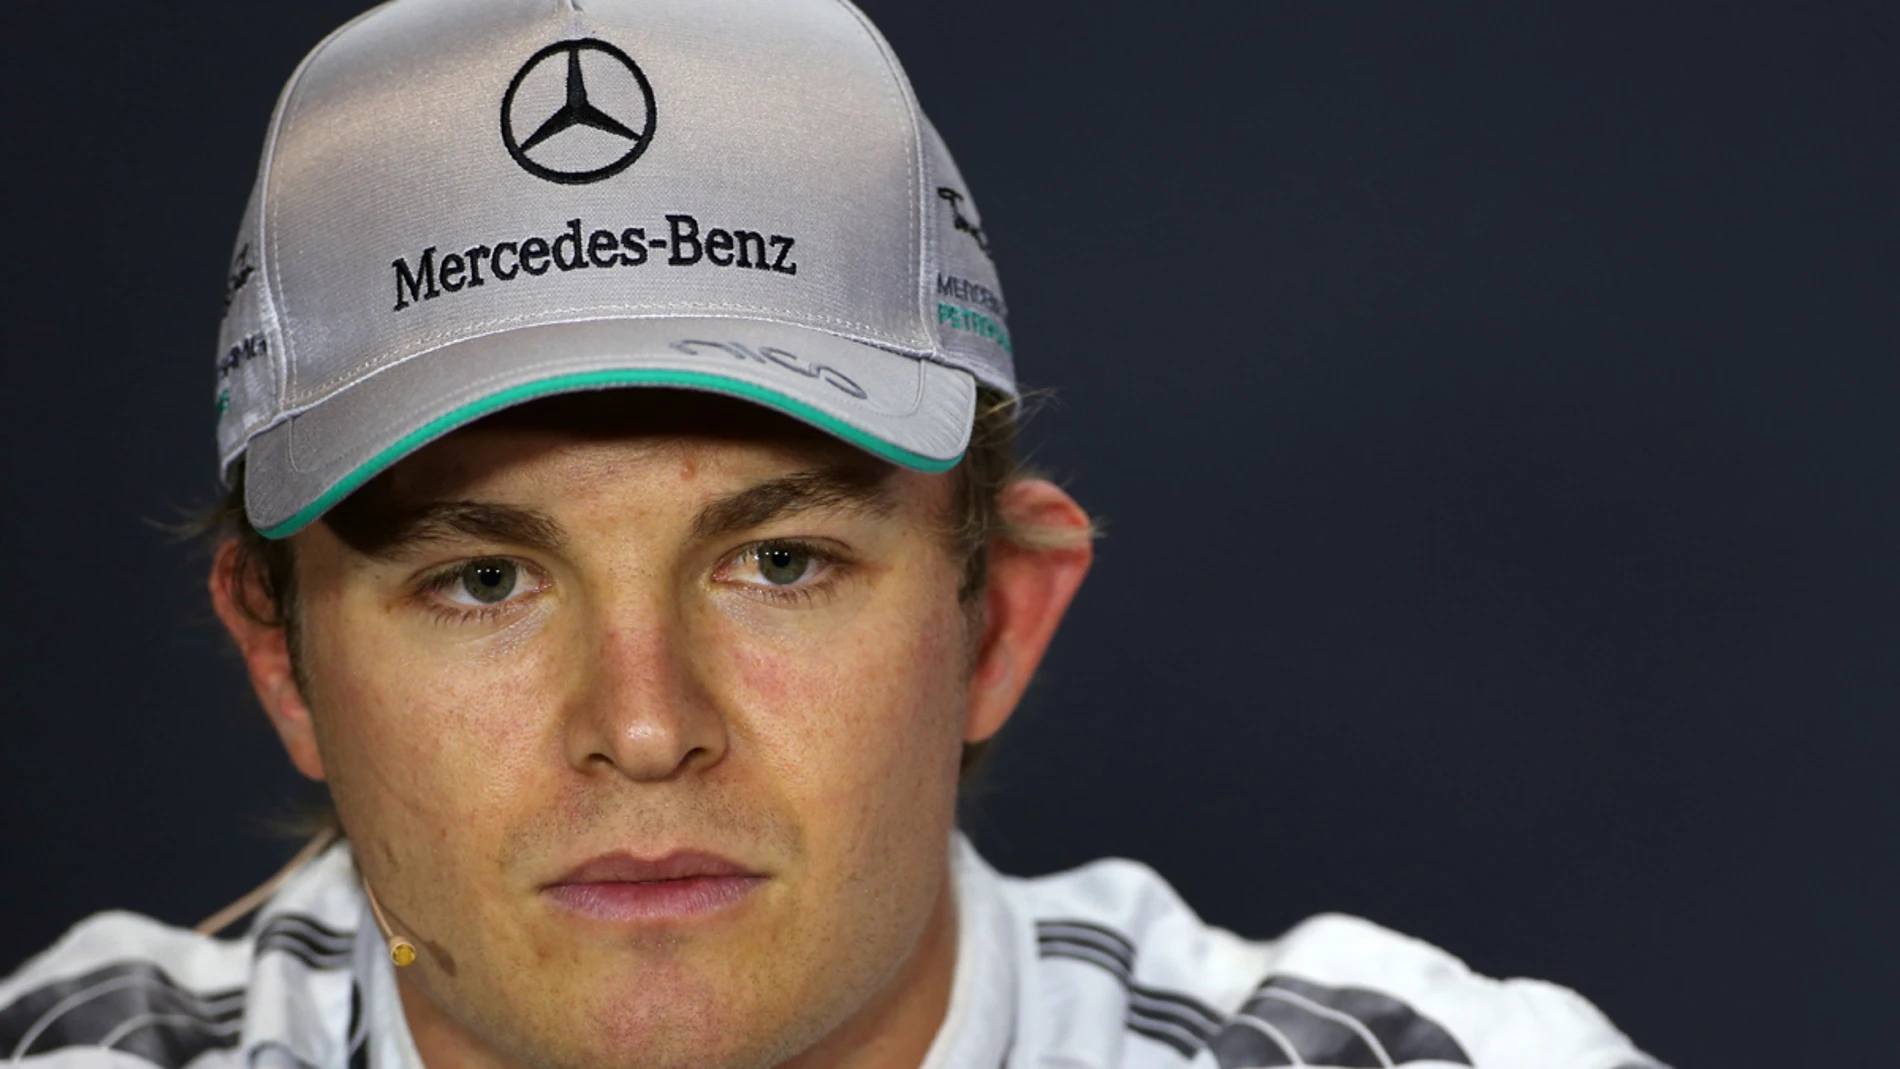 Rosberg habla en rueda de prensa